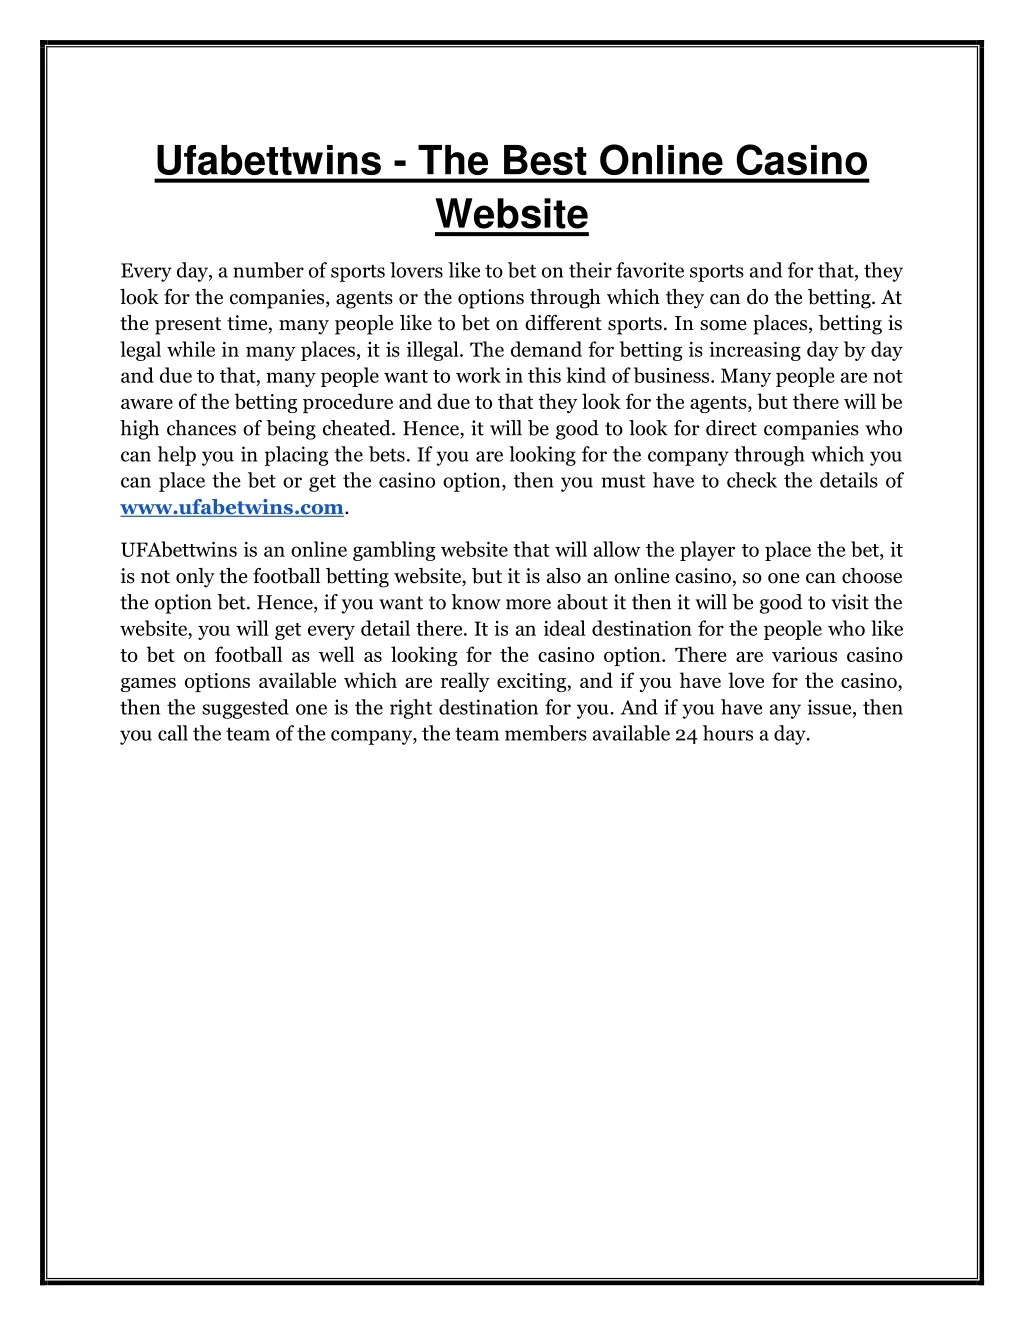 ufabettwins the best online casino website